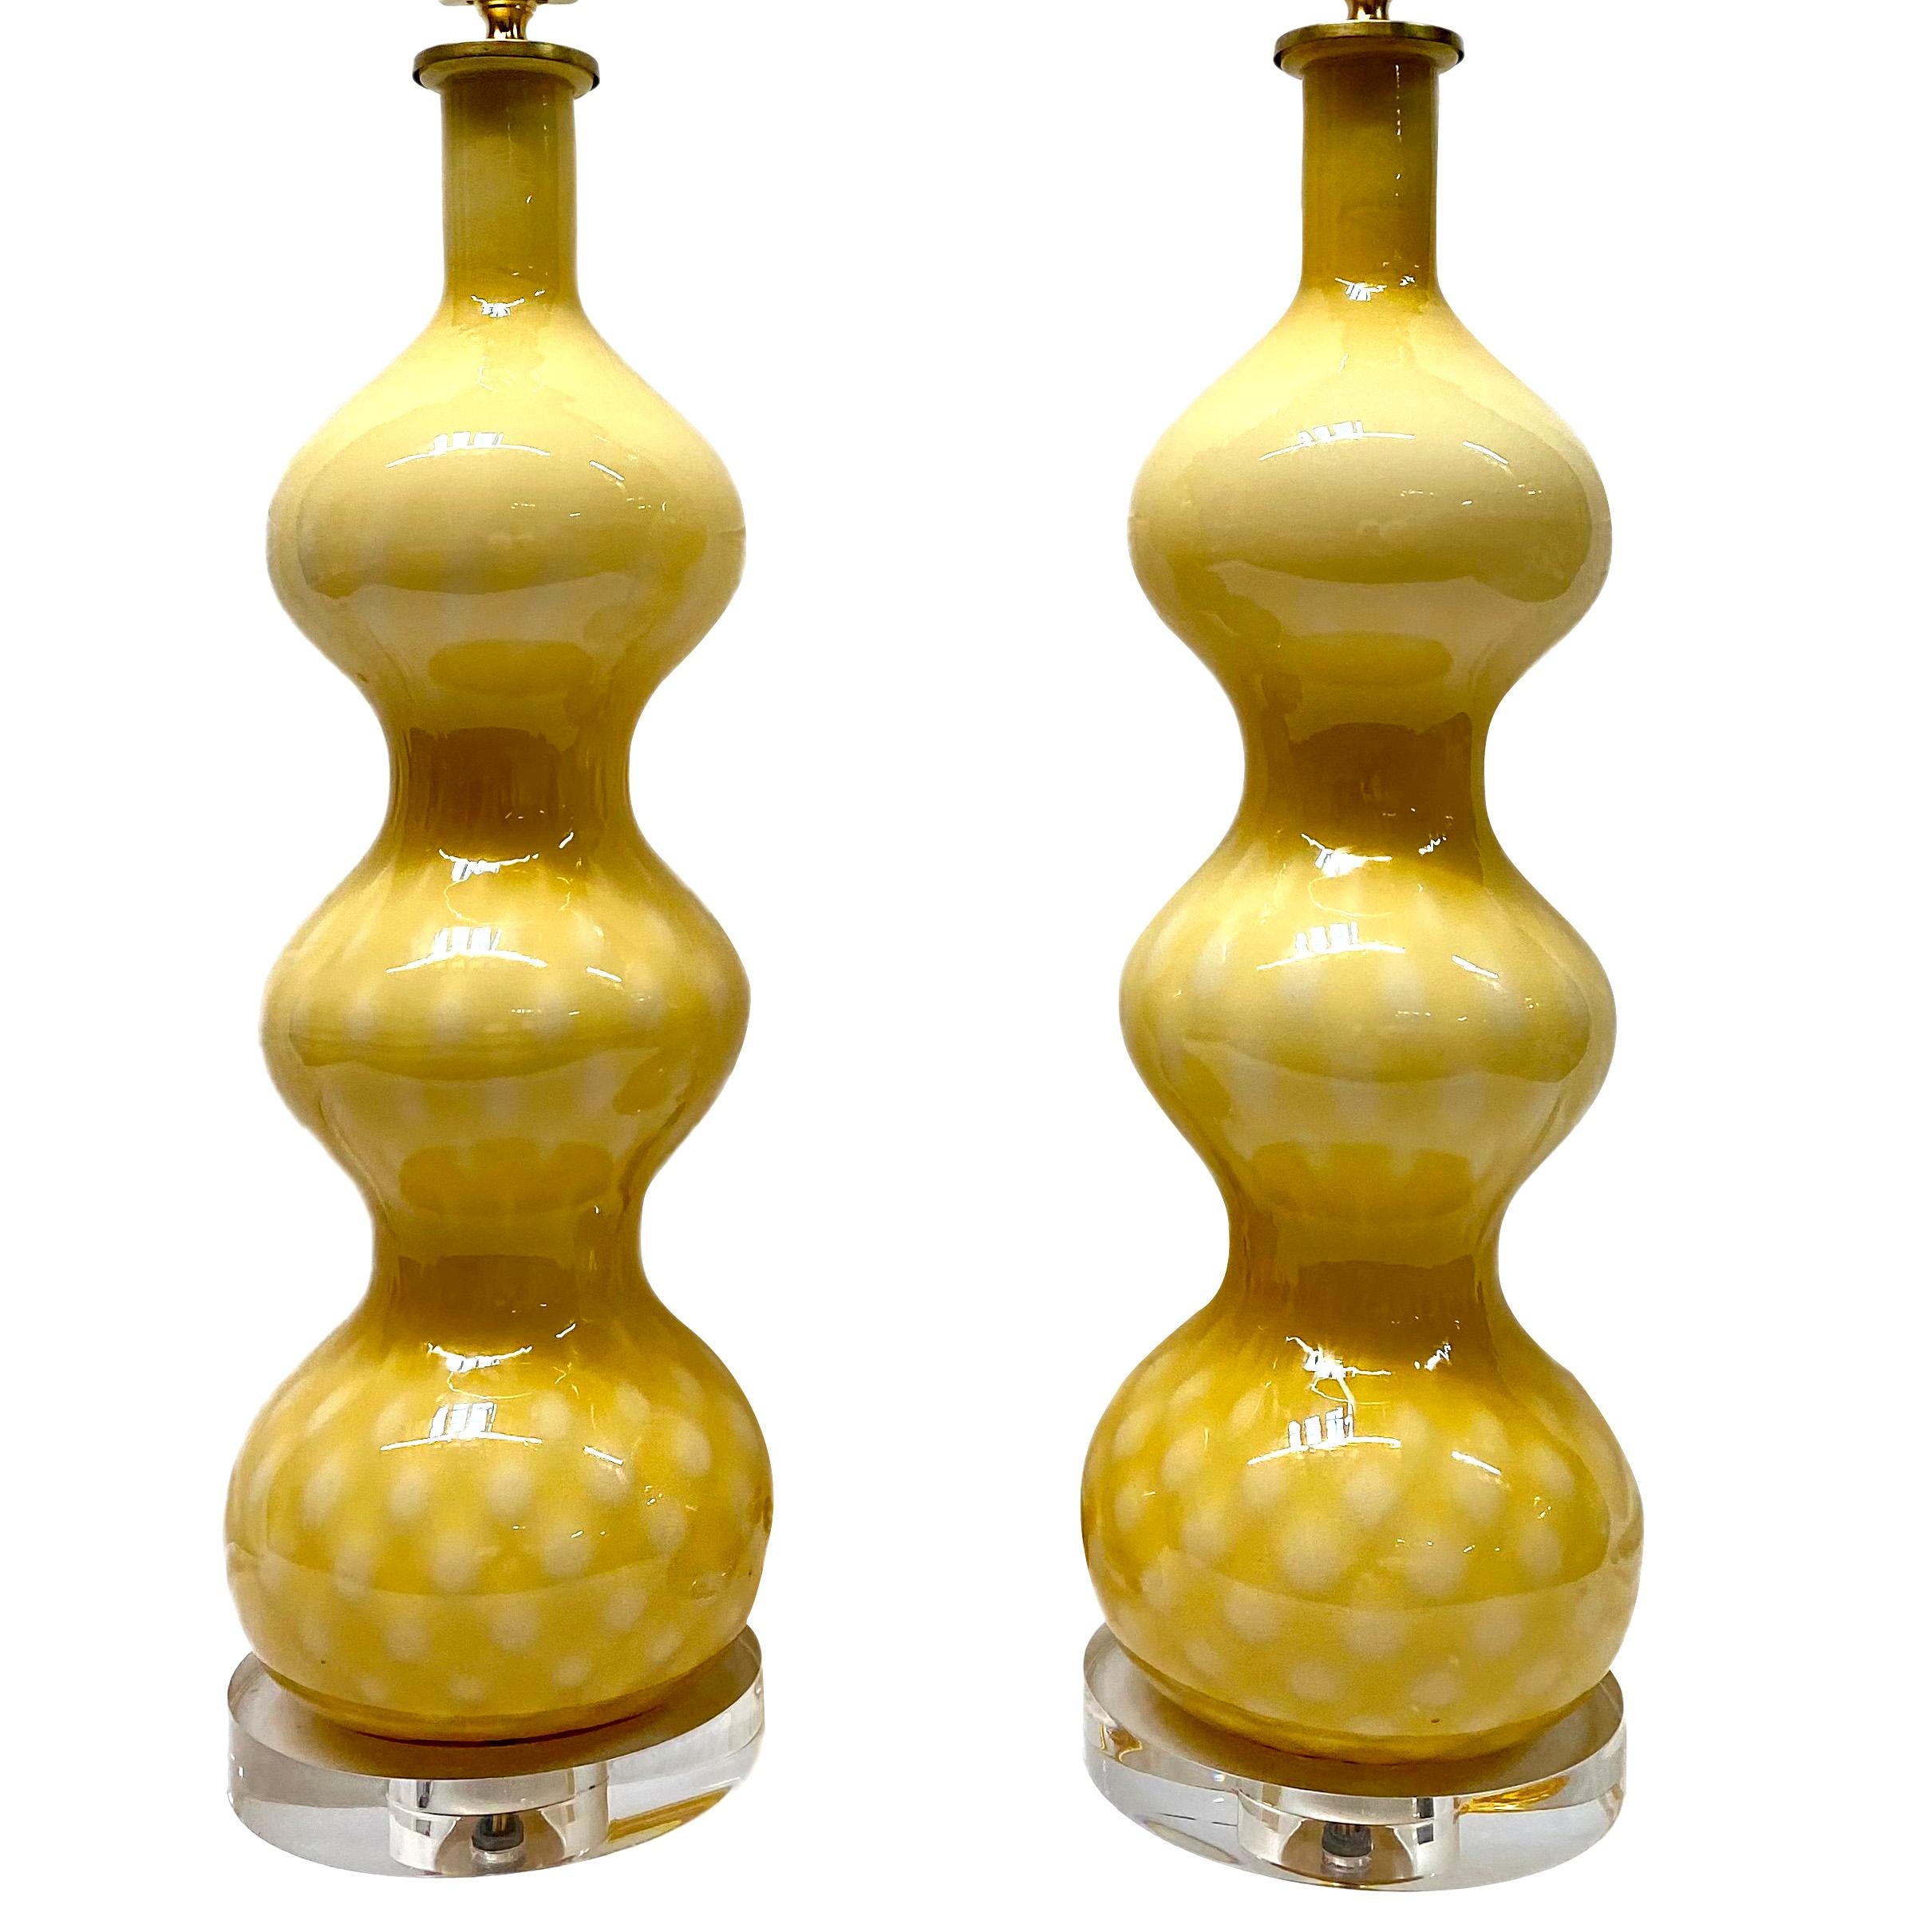 Paar italienische Tischlampen aus mundgeblasenem Muranoglas aus den 1950er Jahren mit Sockeln aus Lucit.

Abmessungen:
Höhe des Körpers: 19,5